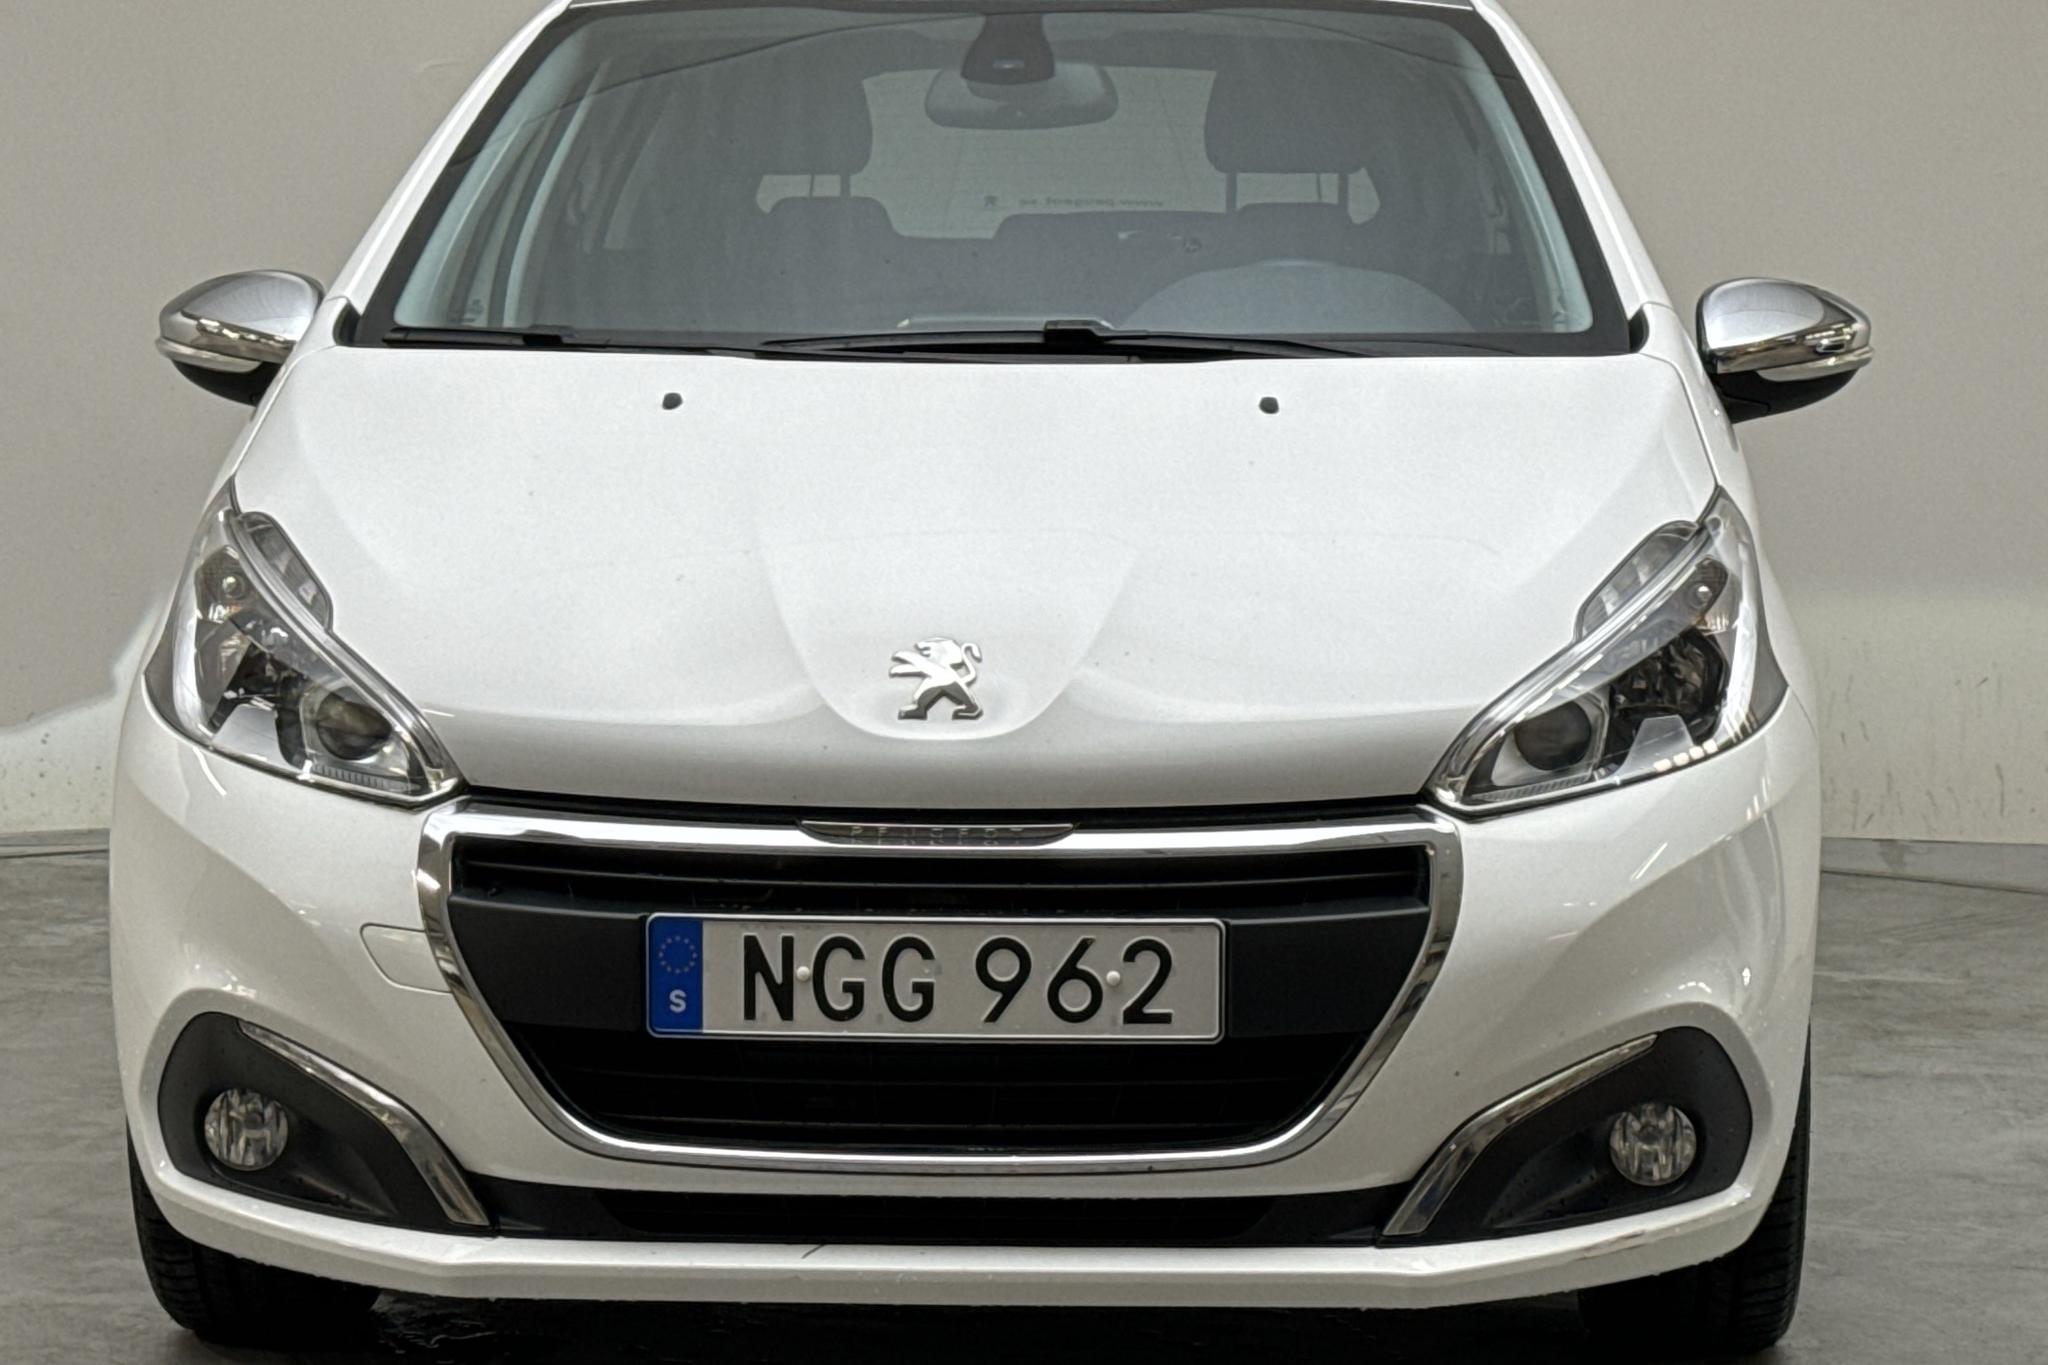 Peugeot 208 PureTech 5dr (82hk) - 5 467 mil - Manuell - 2016